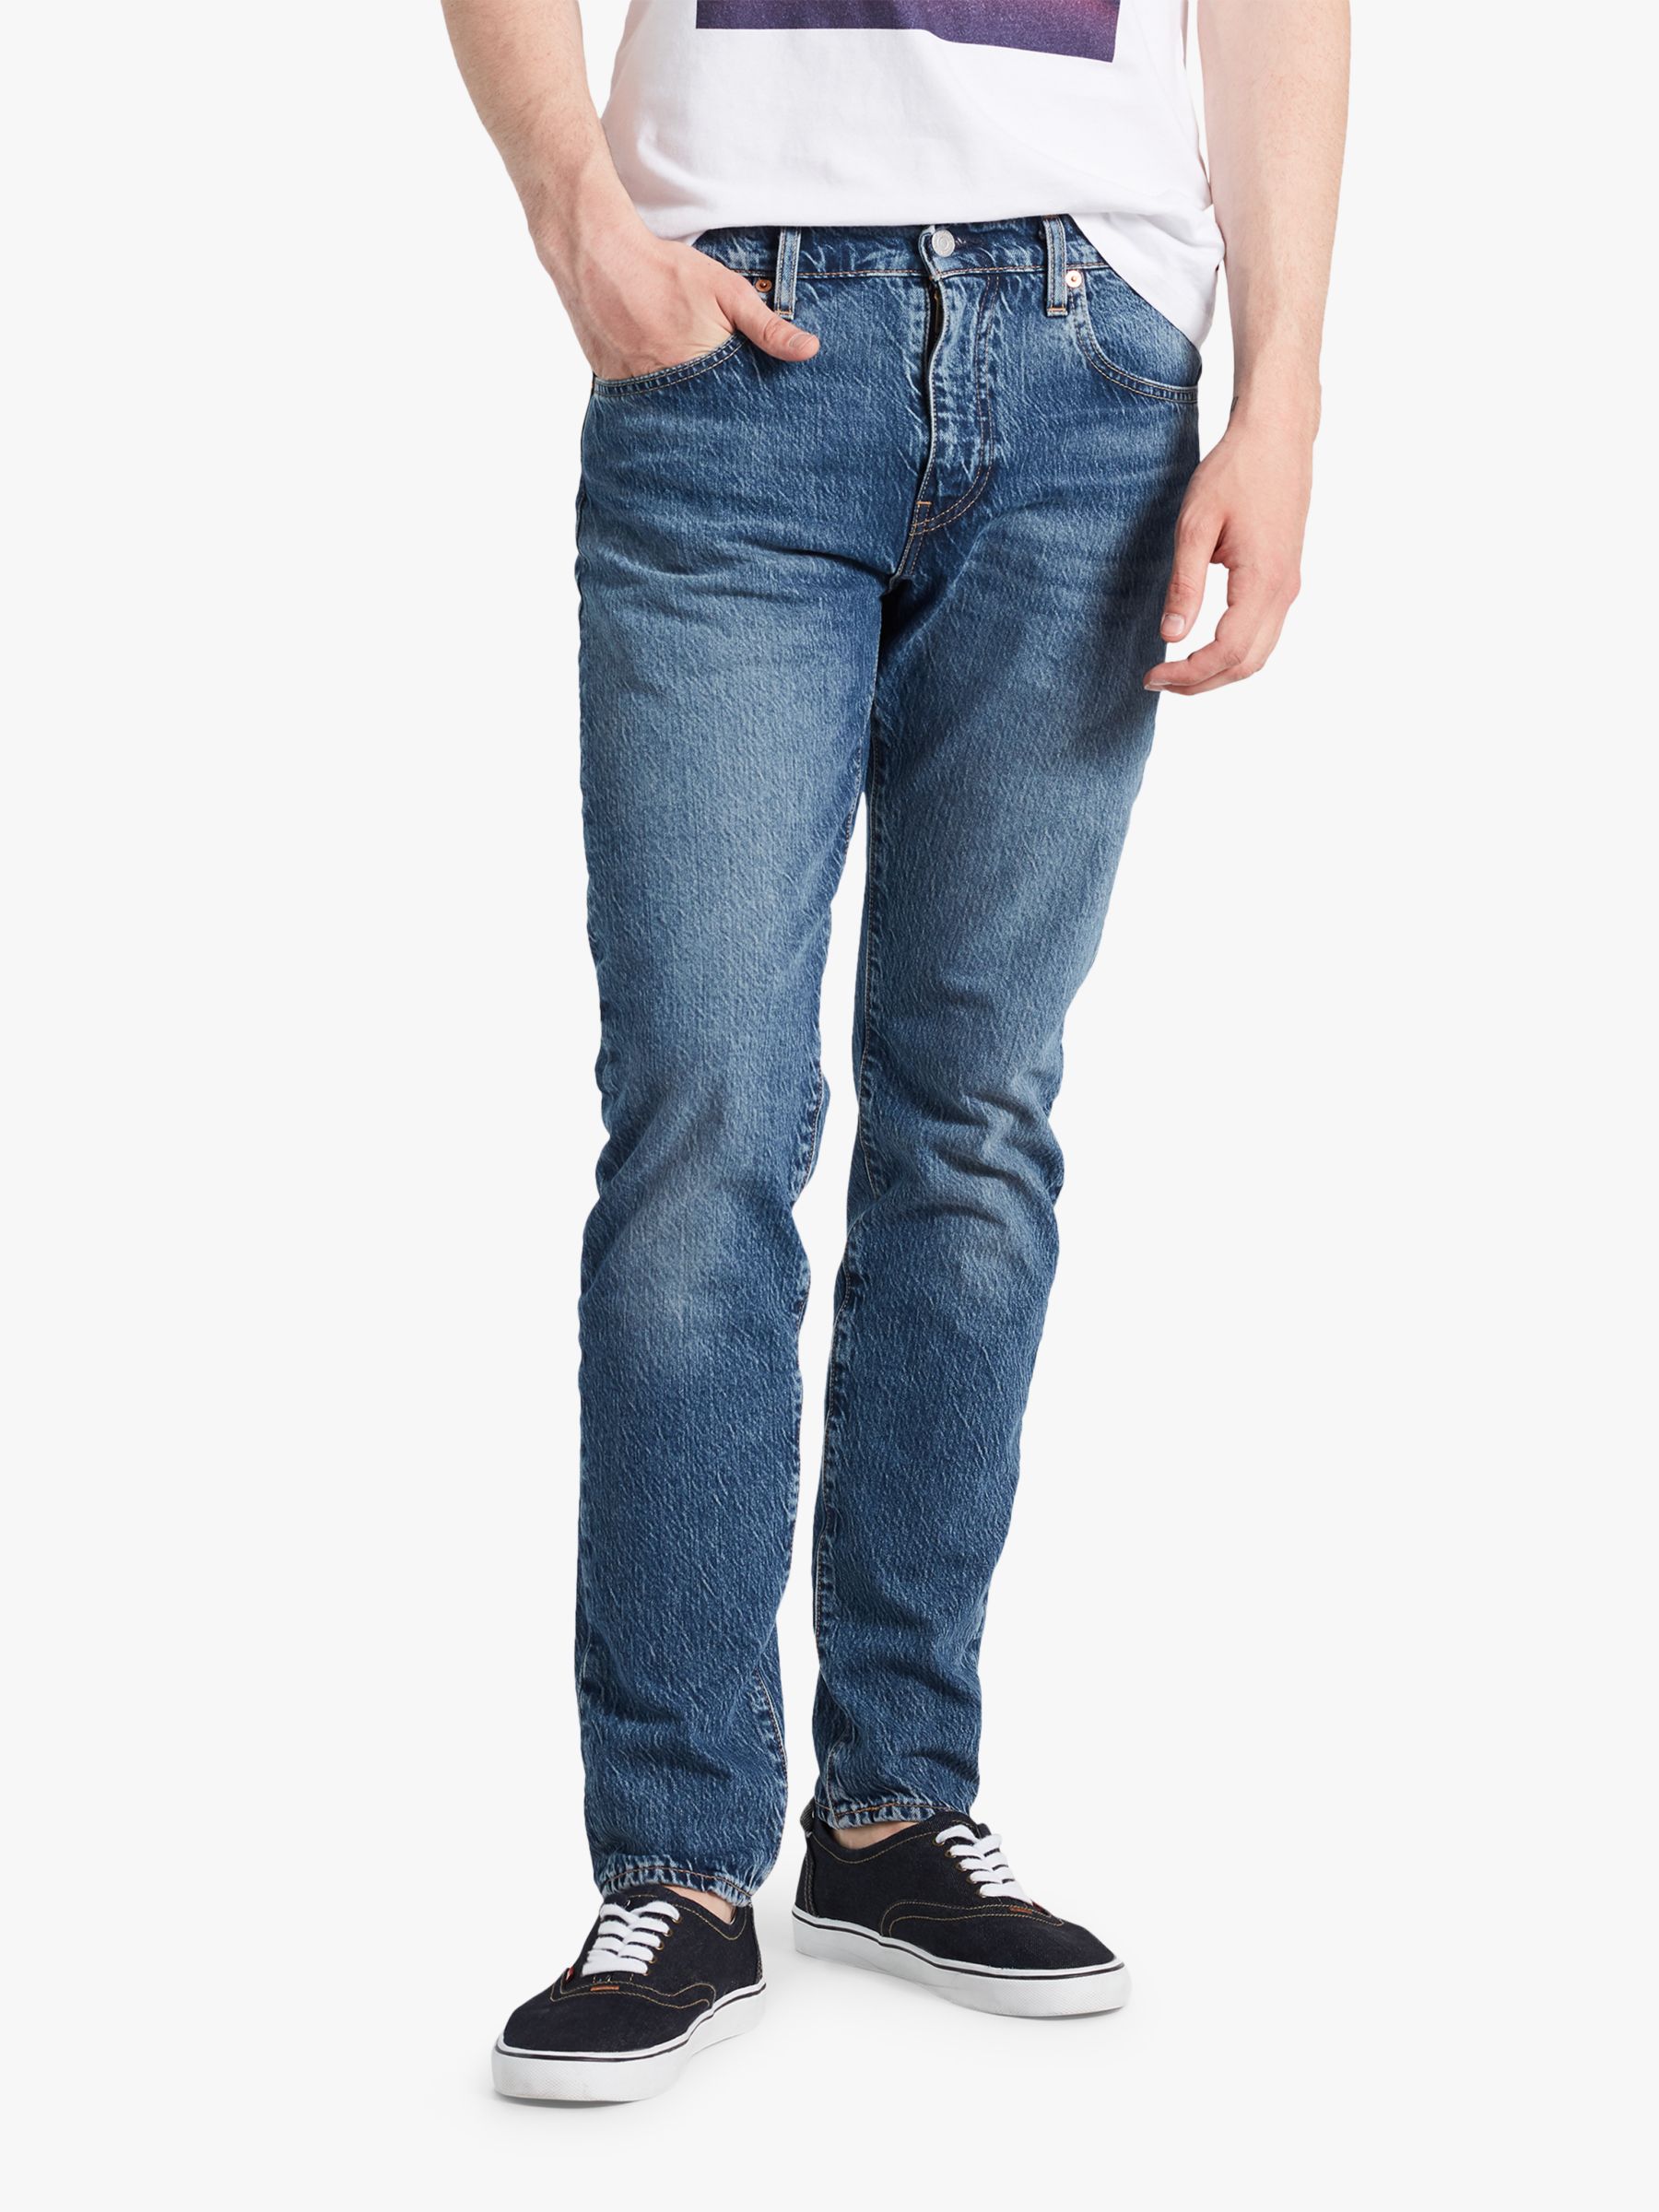 Levi's 512 Slim Tapered Jeans, Marcel Dark